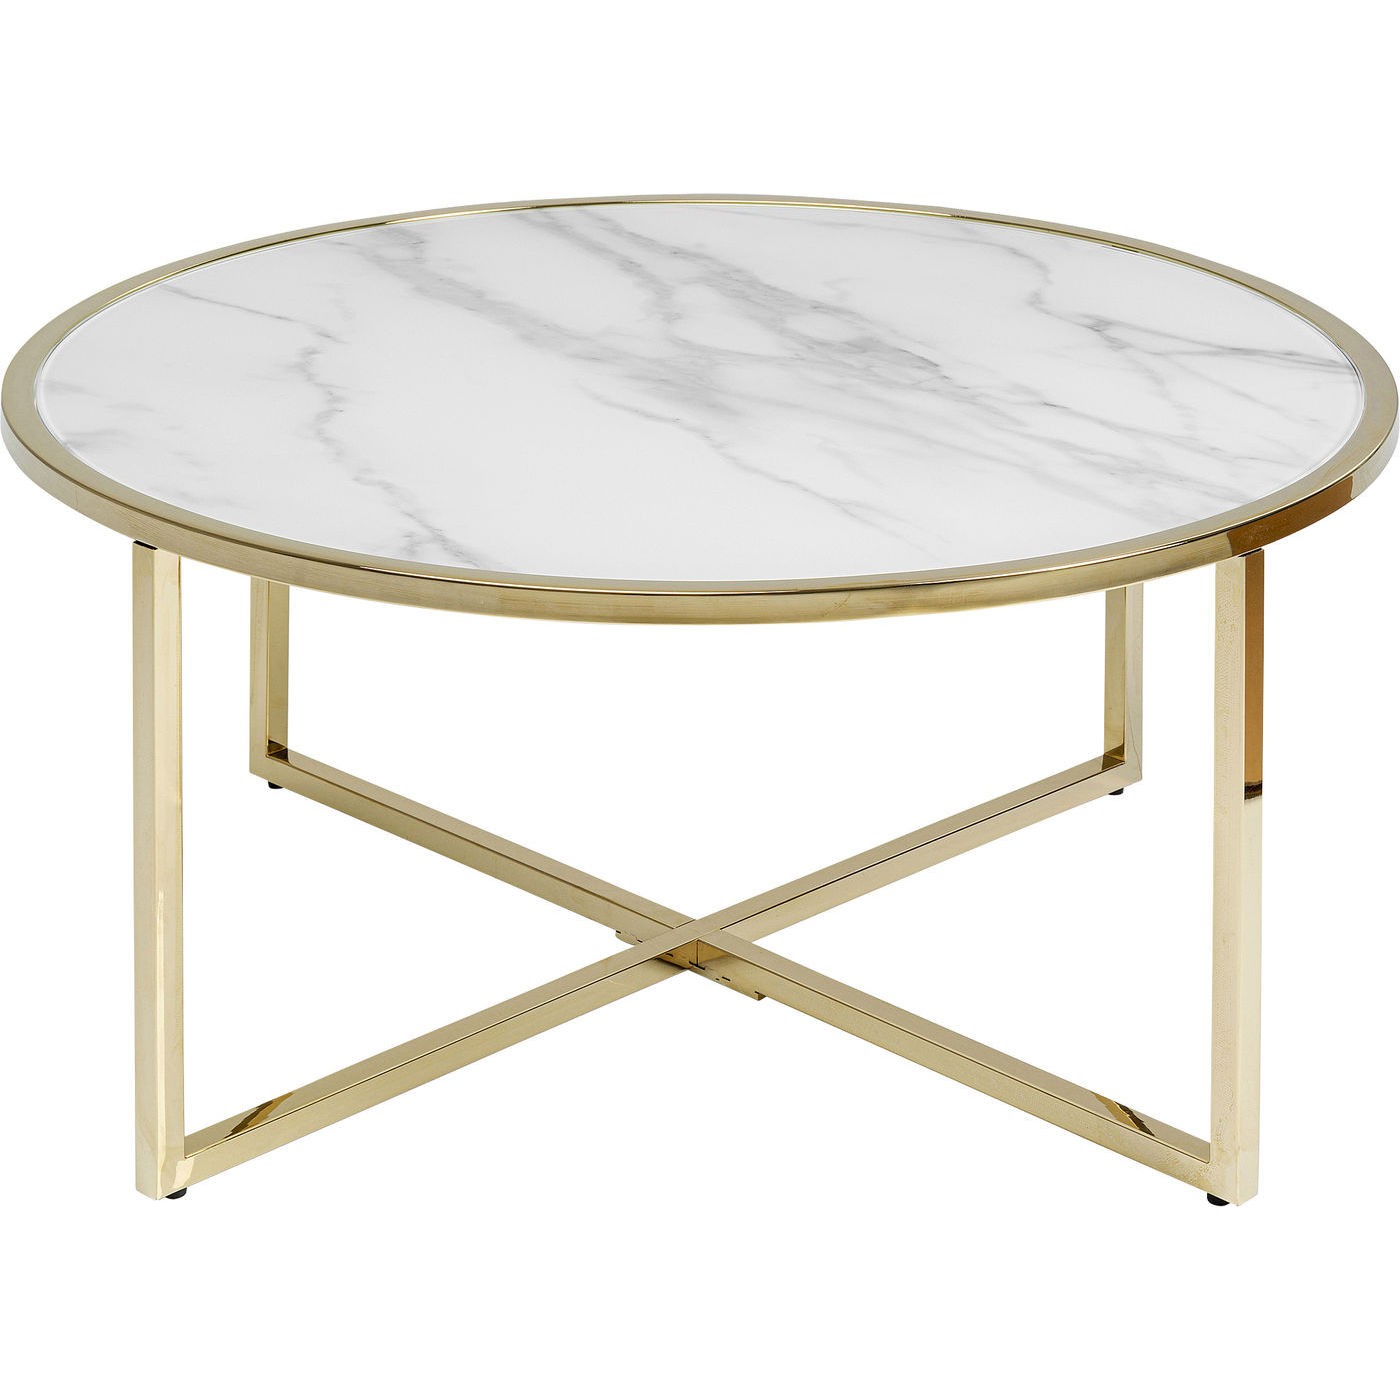 Table basse ronde en verre effet marbre blanc et acier doré D80